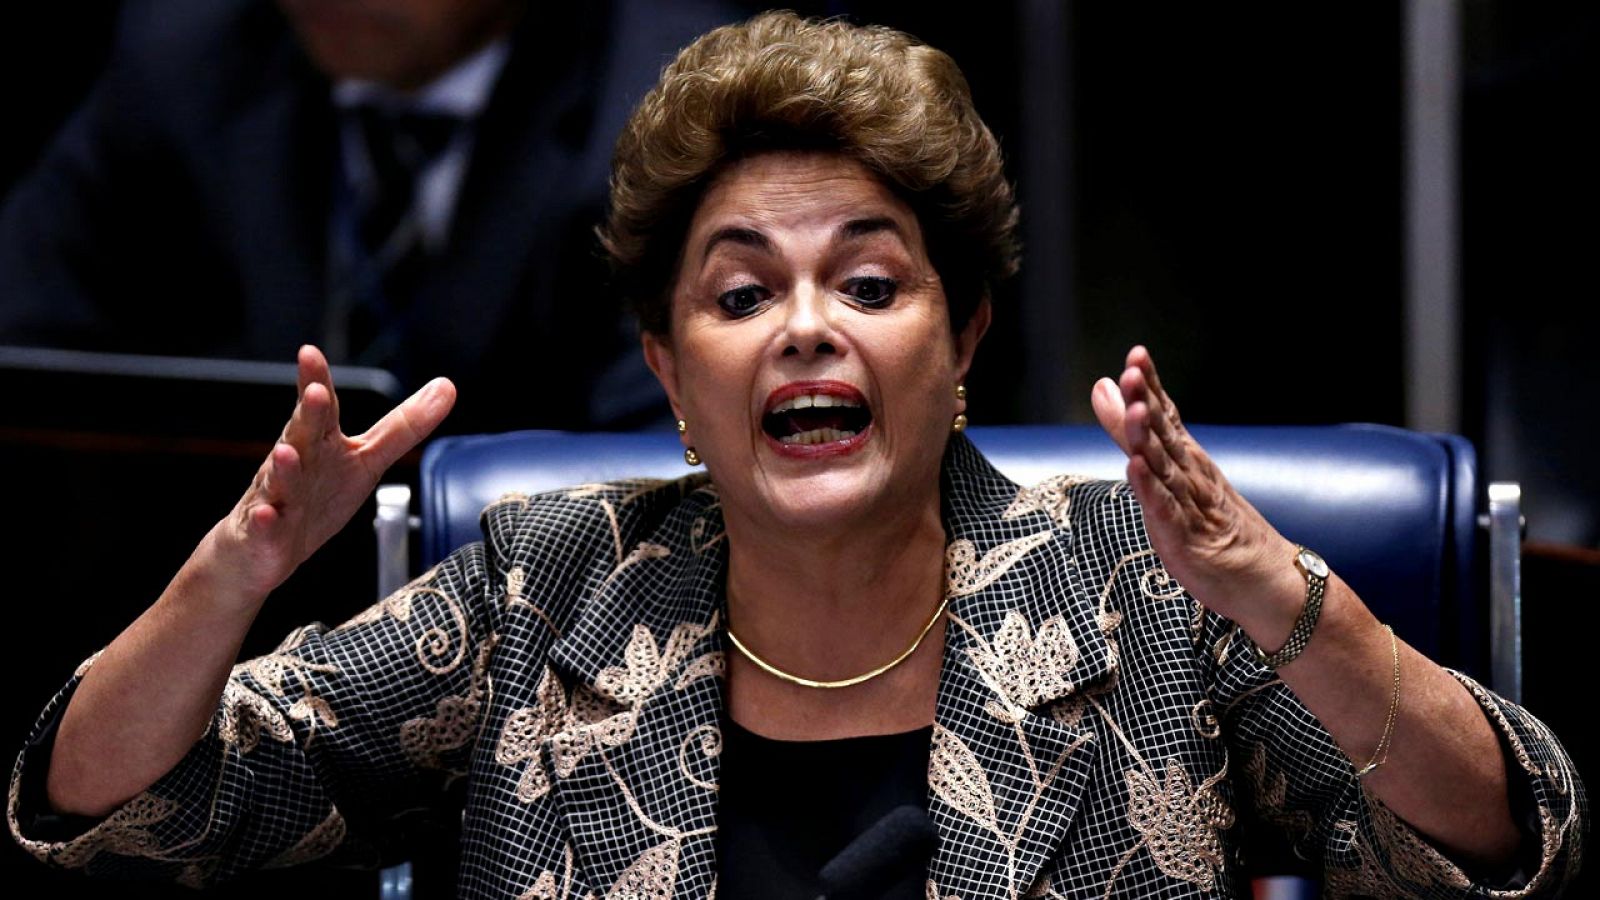 La presidenta de Brasil, Dilma Rousseff, respondiendo a los senadores durante su juicio político